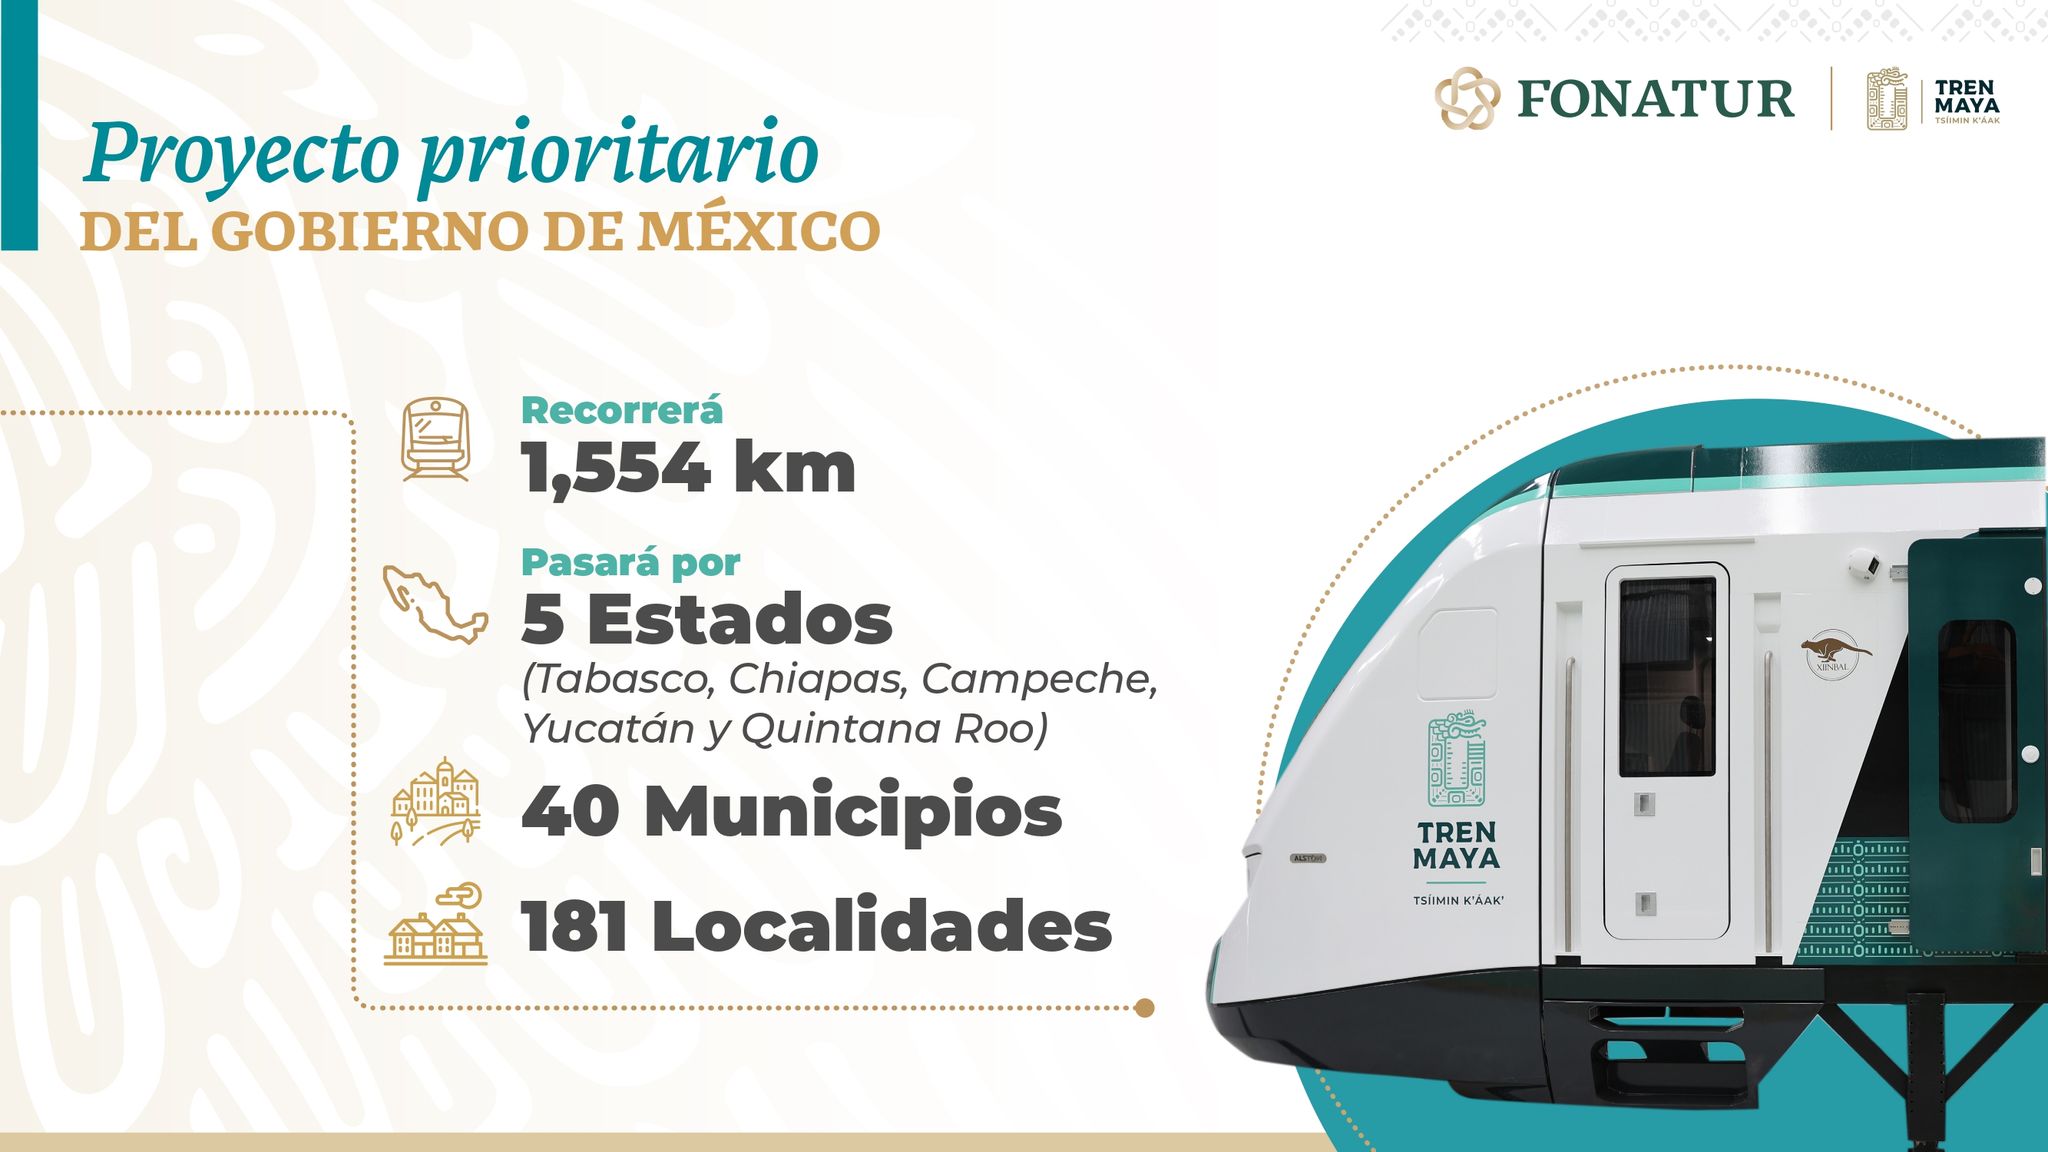 Tren Maya, Proyecto prioritario del Gobierno de México